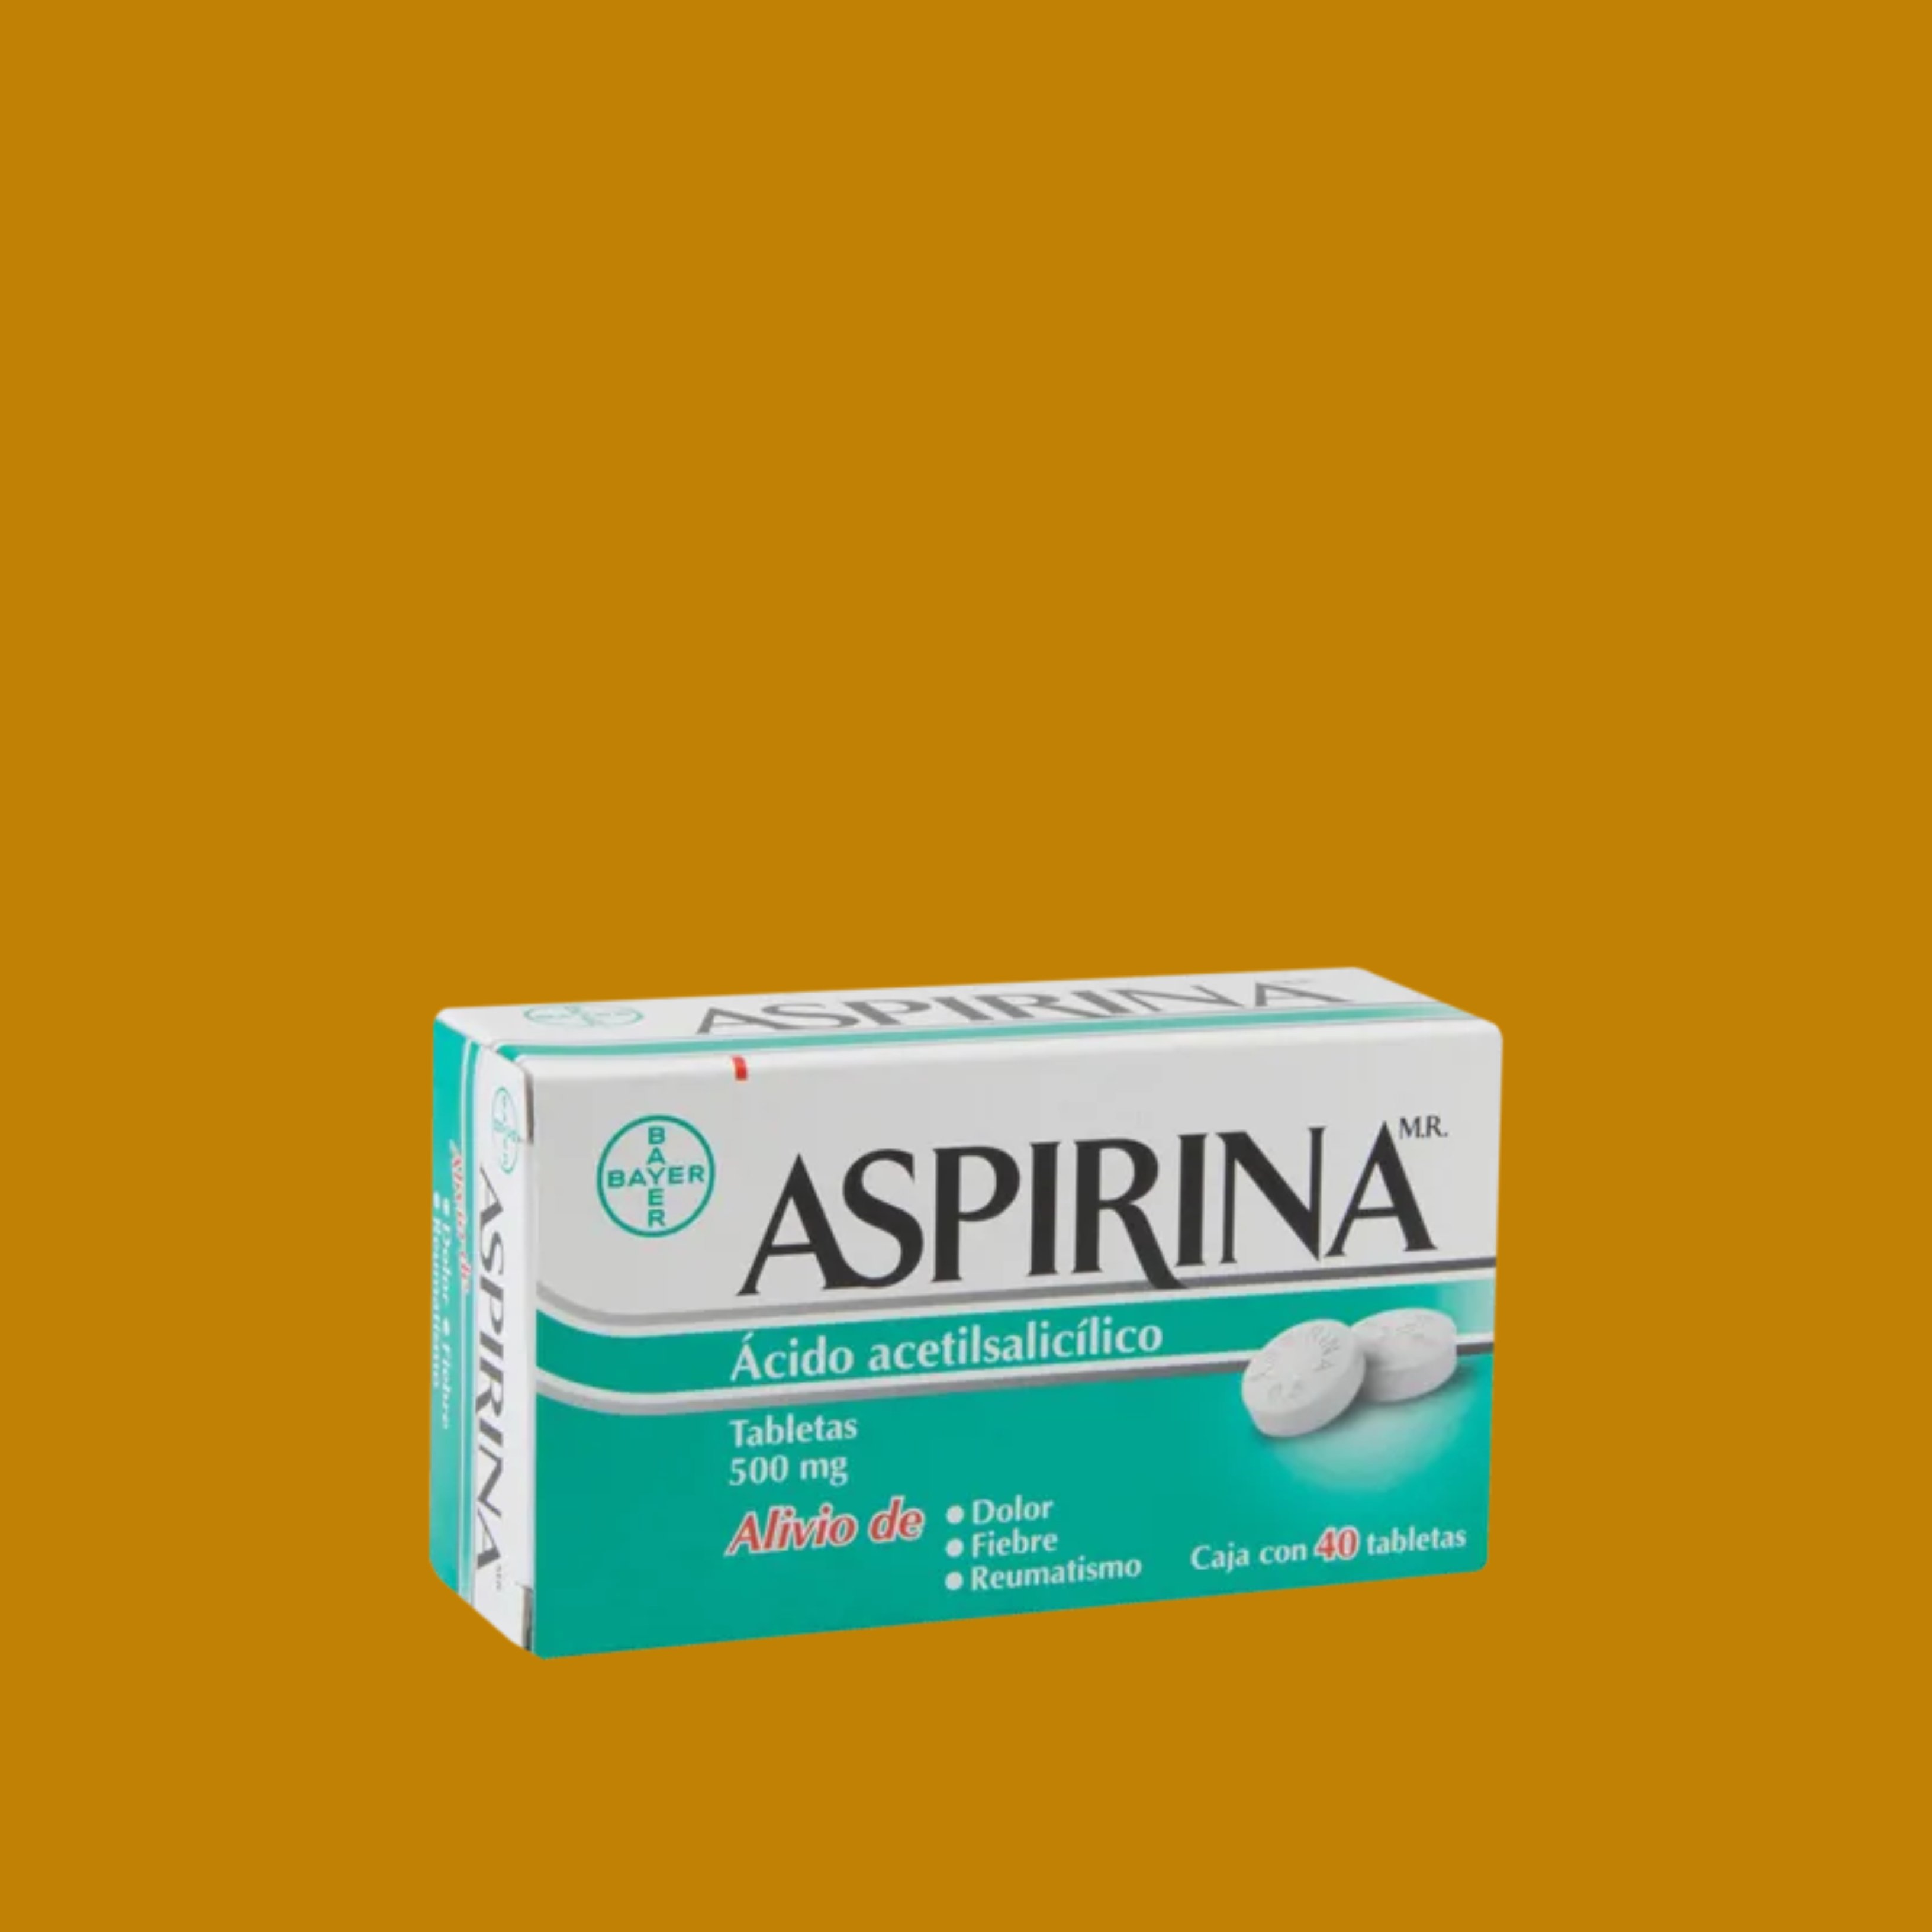 La aspirina podría ser un fármaco muy importante contra la Covid-19